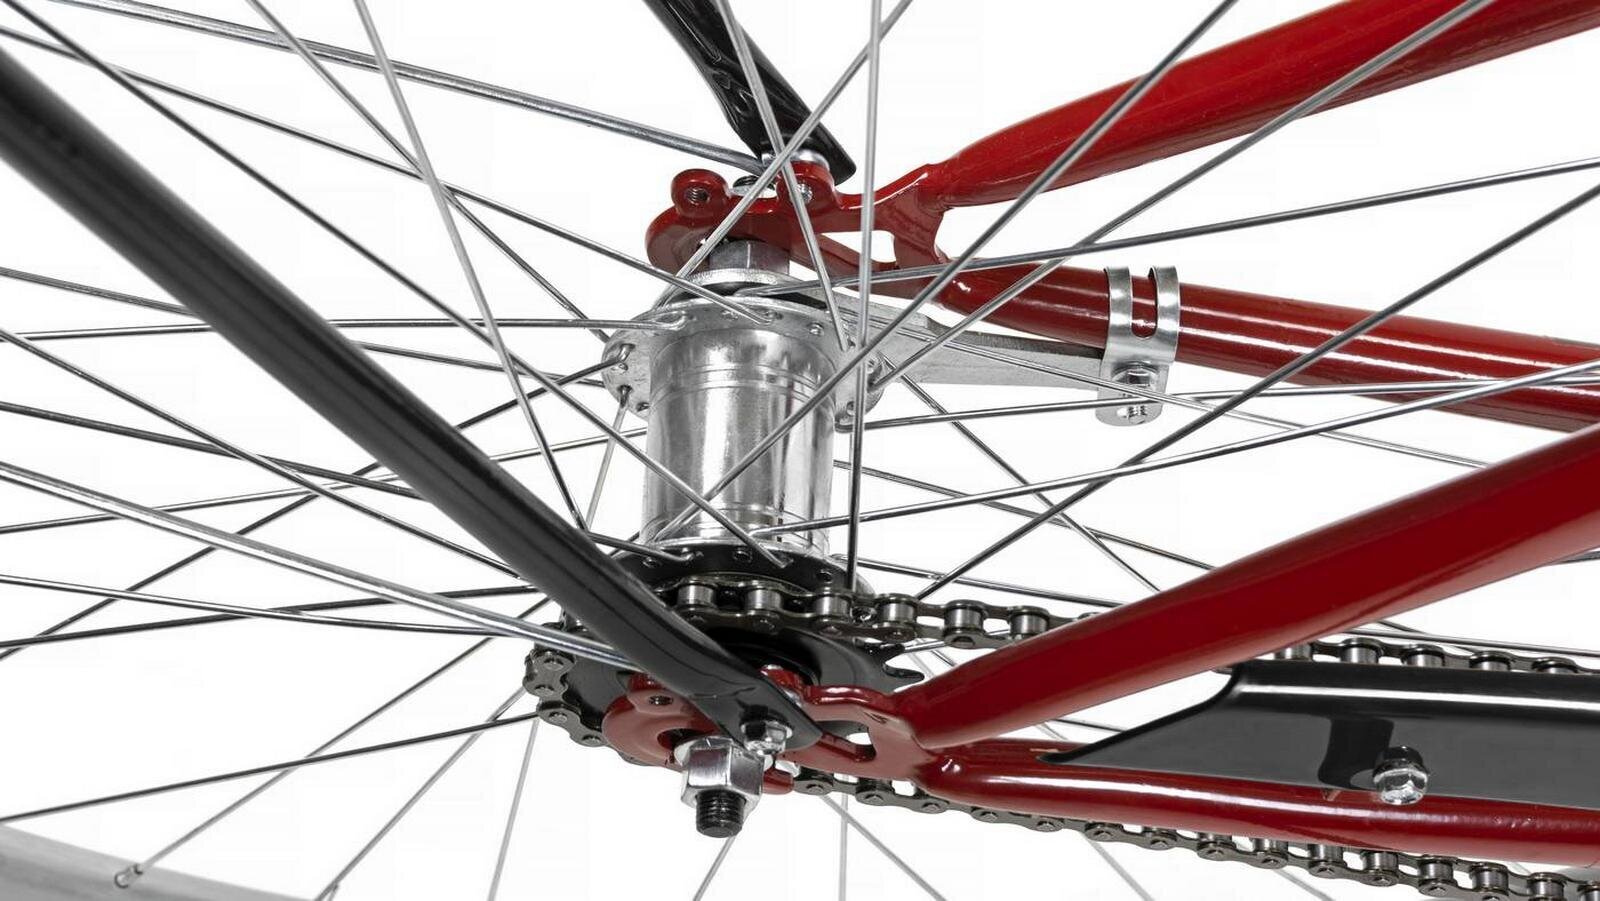 Pilsētas velosipēds AZIMUT Classic 26" 2021, sarkans cena un informācija | Velosipēdi | 220.lv